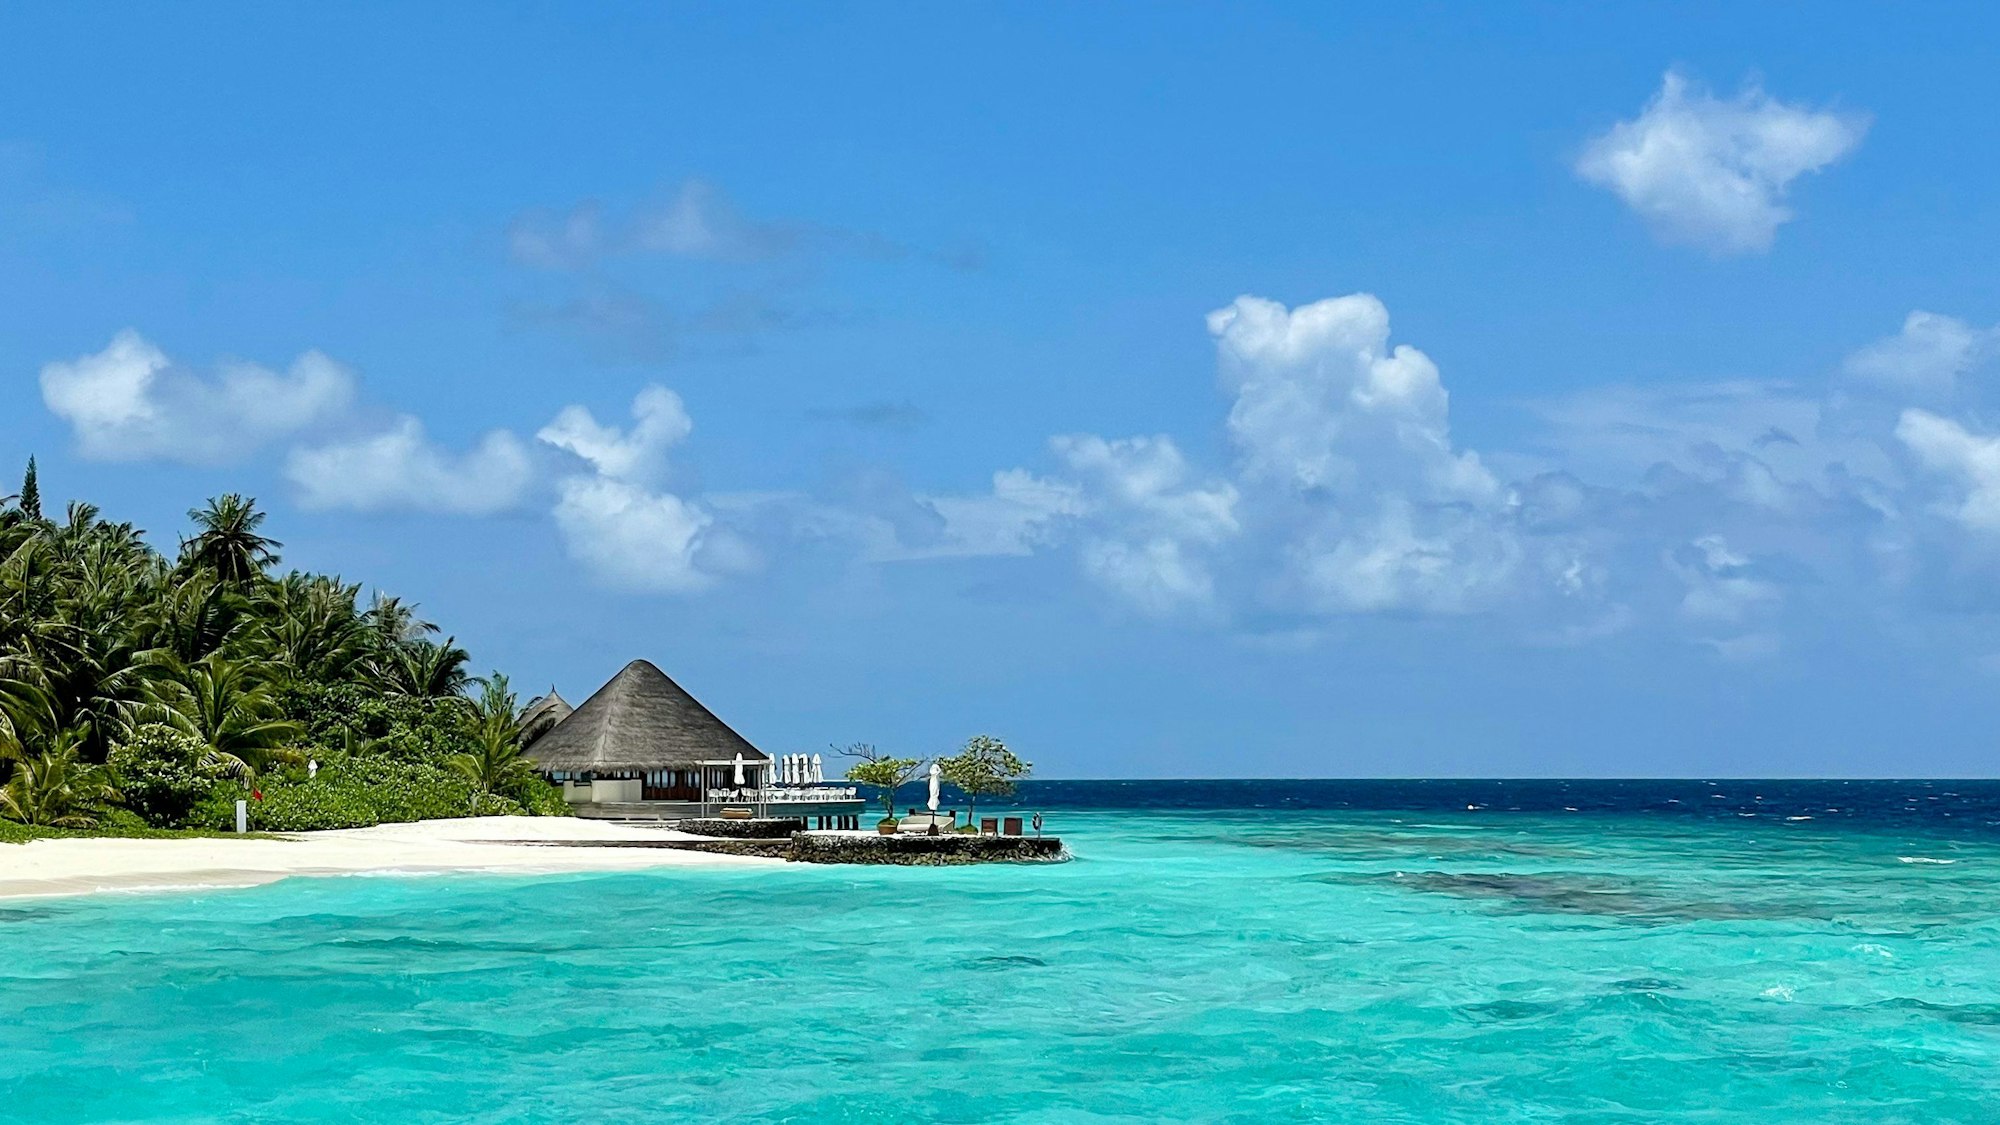 Strand auf den Malediven mit Bungalow.